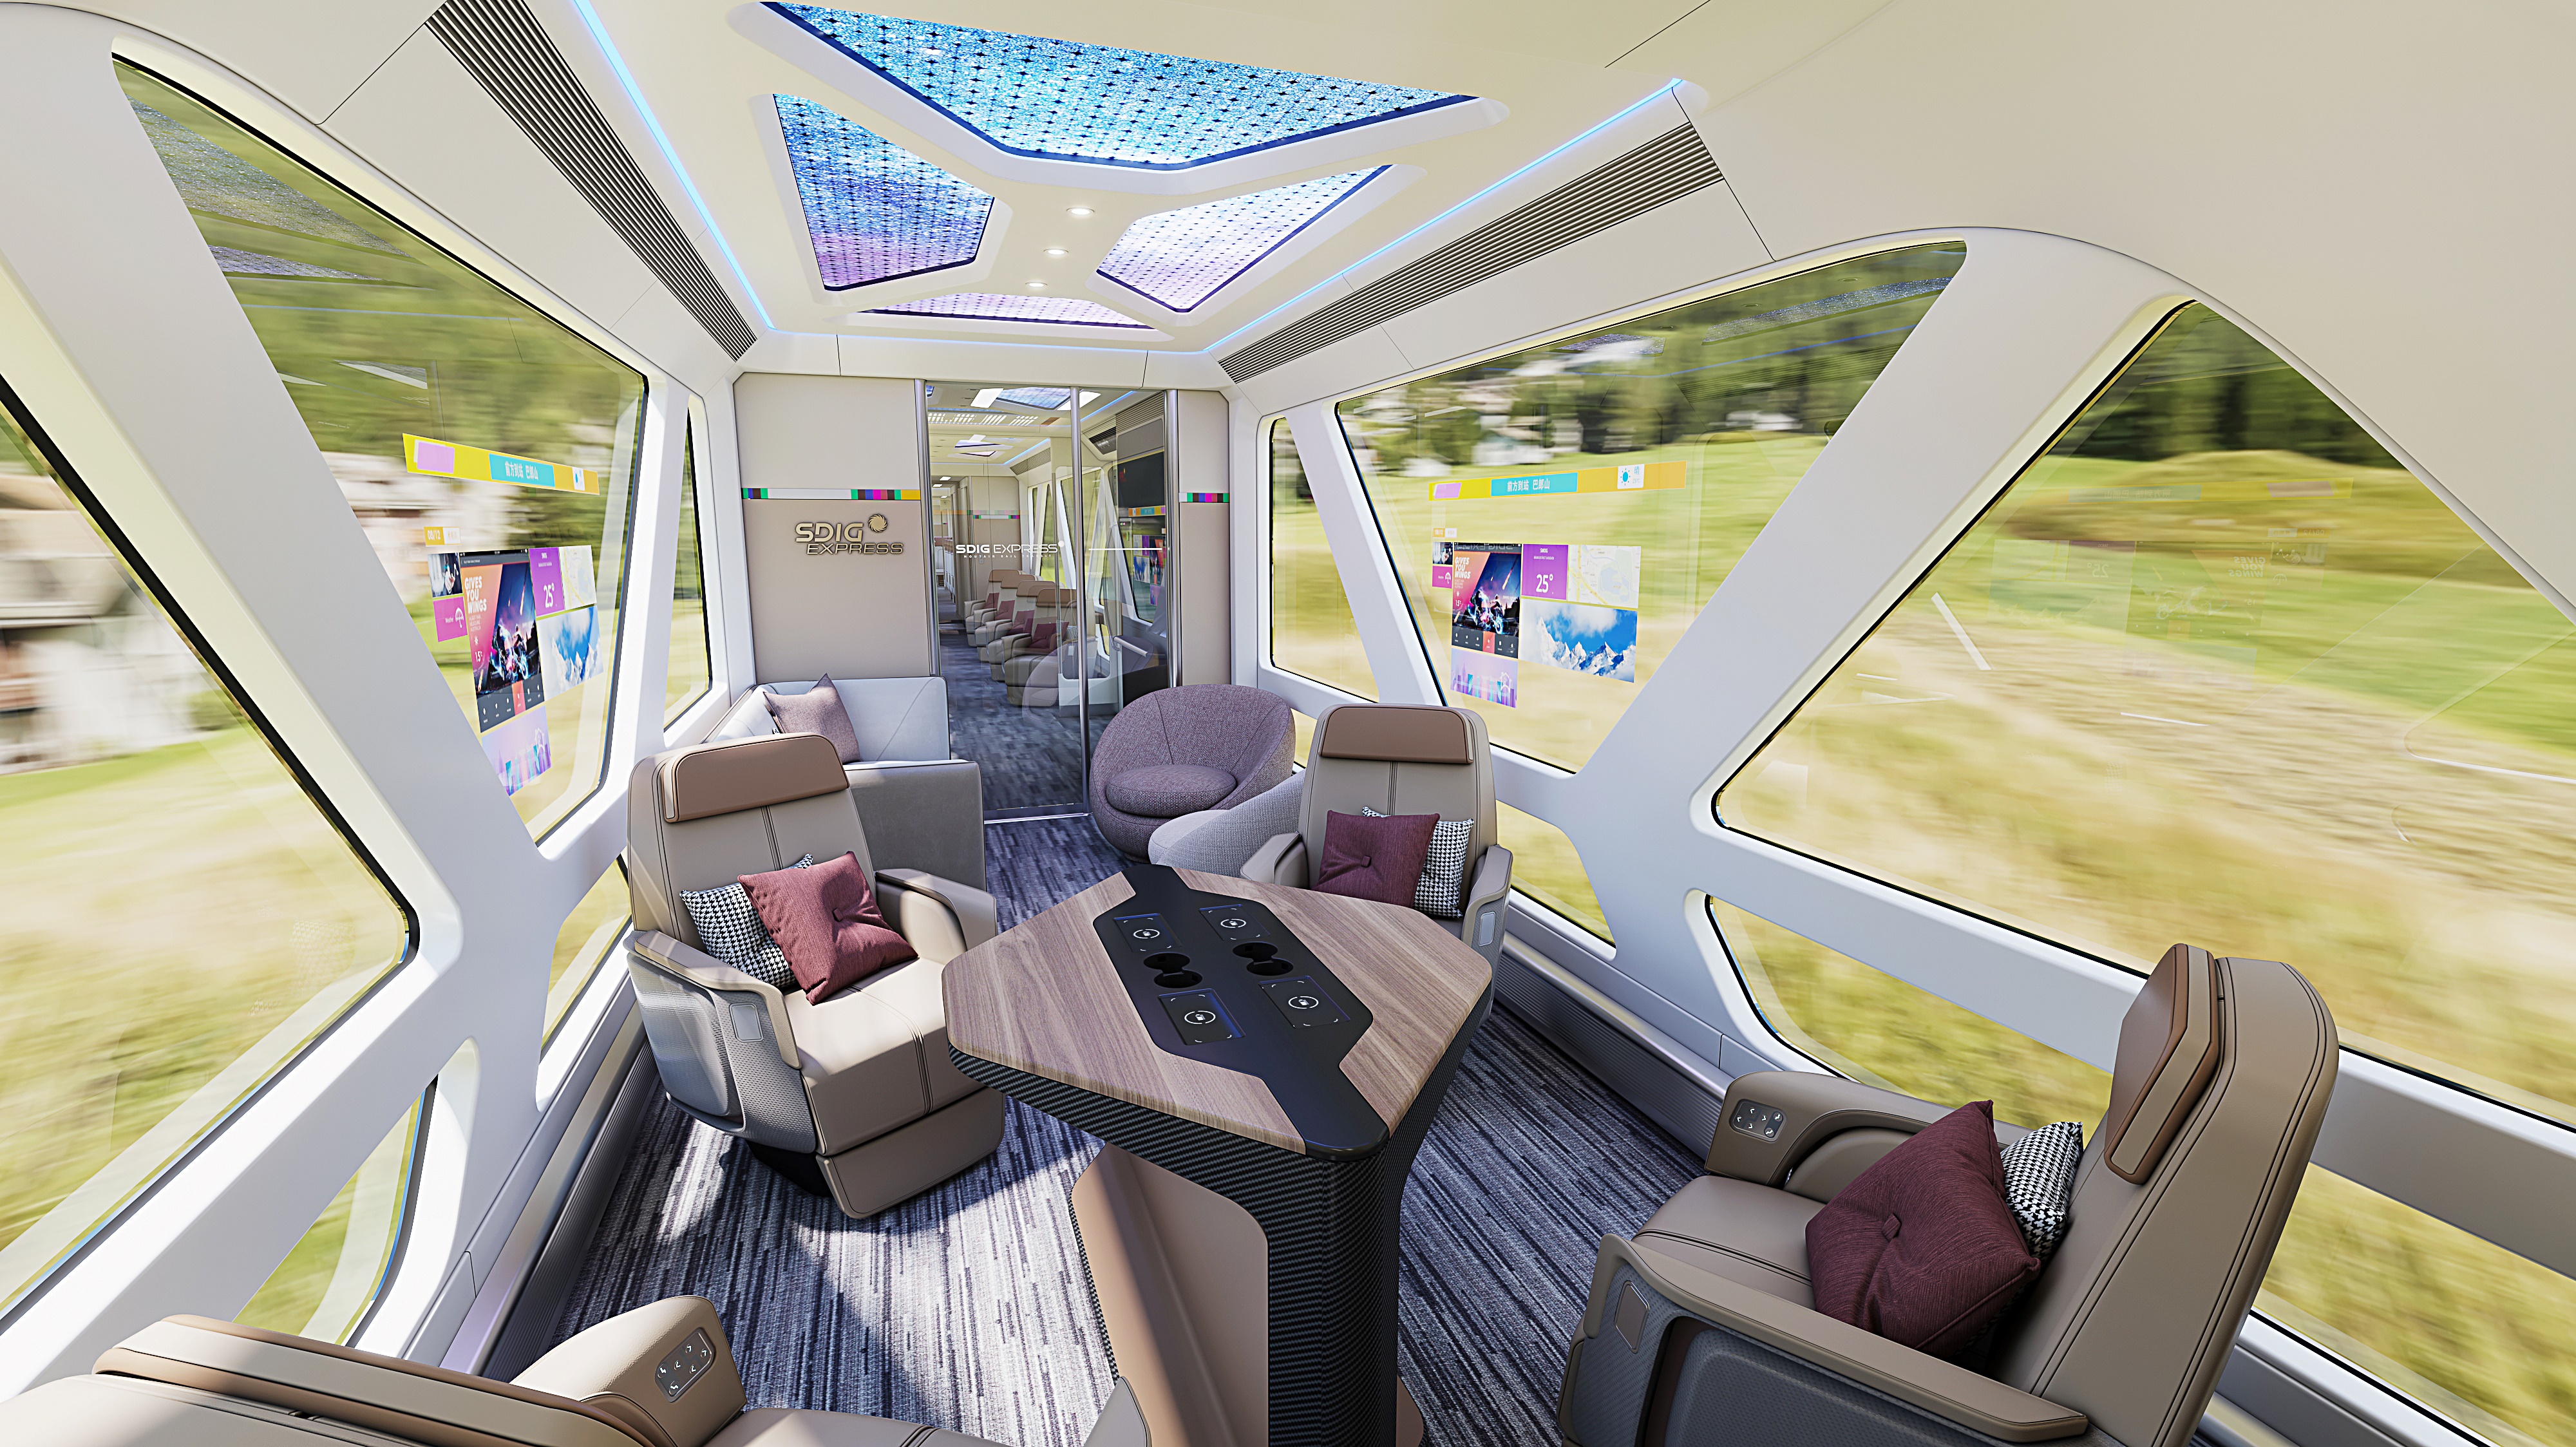 Next generation mountain touring train design